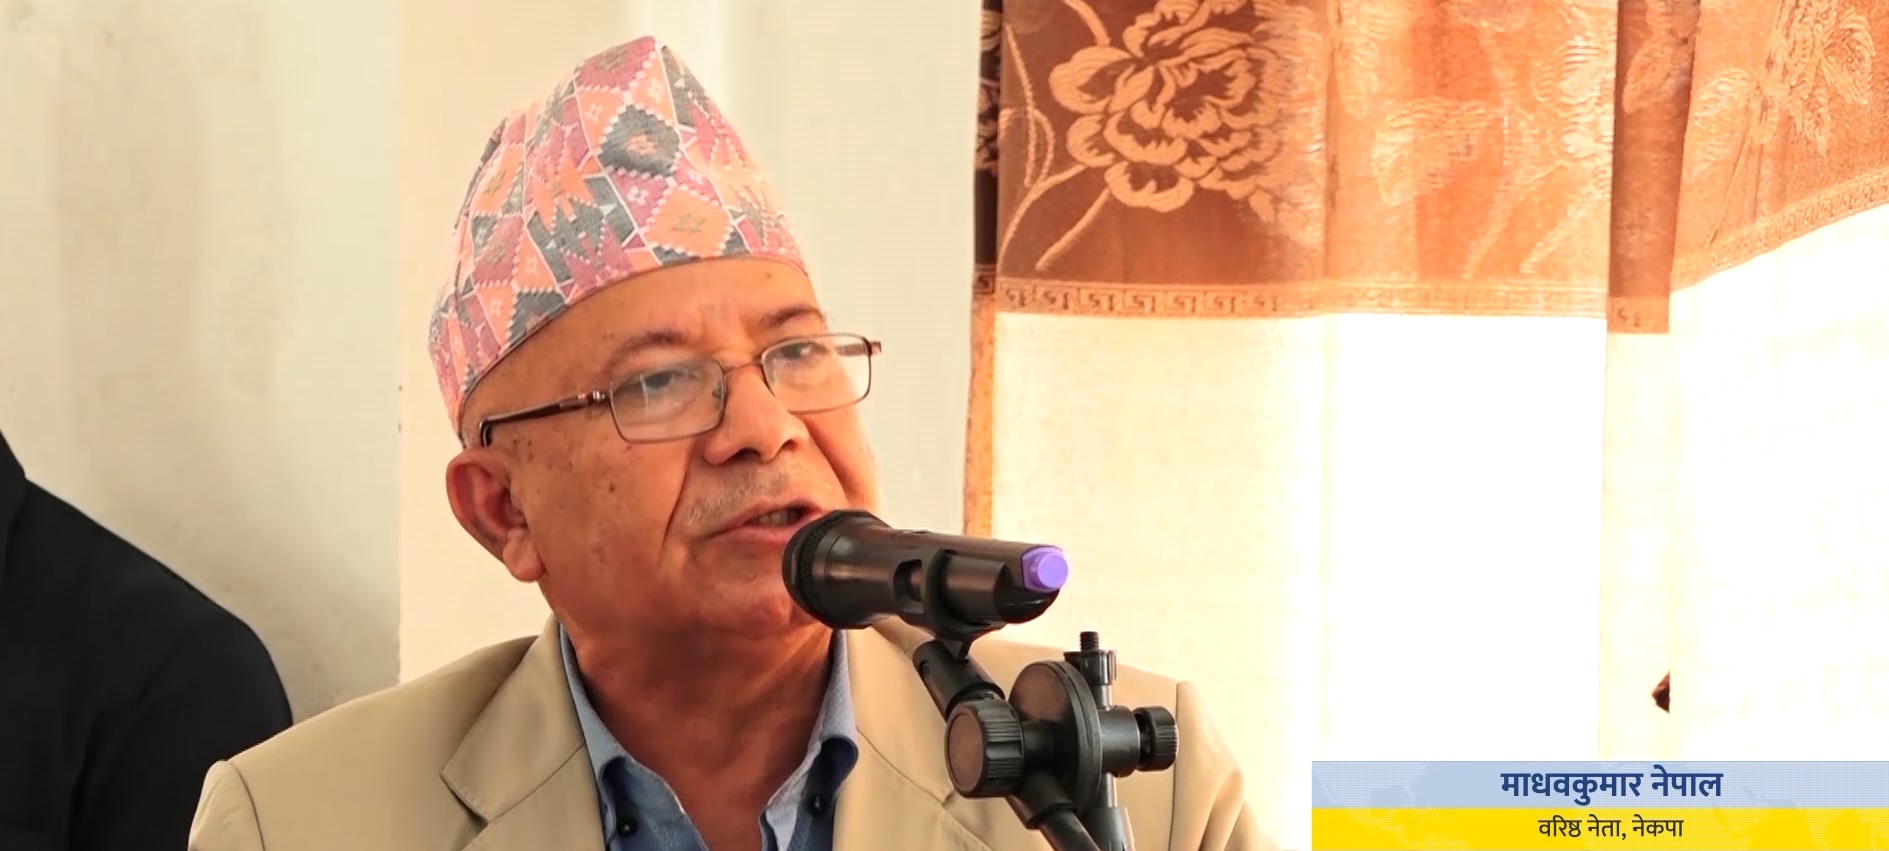 पार्टी निर्णय सबैले स्वीकार गरे समस्या समाधान हुन्छः नेता नेपाल